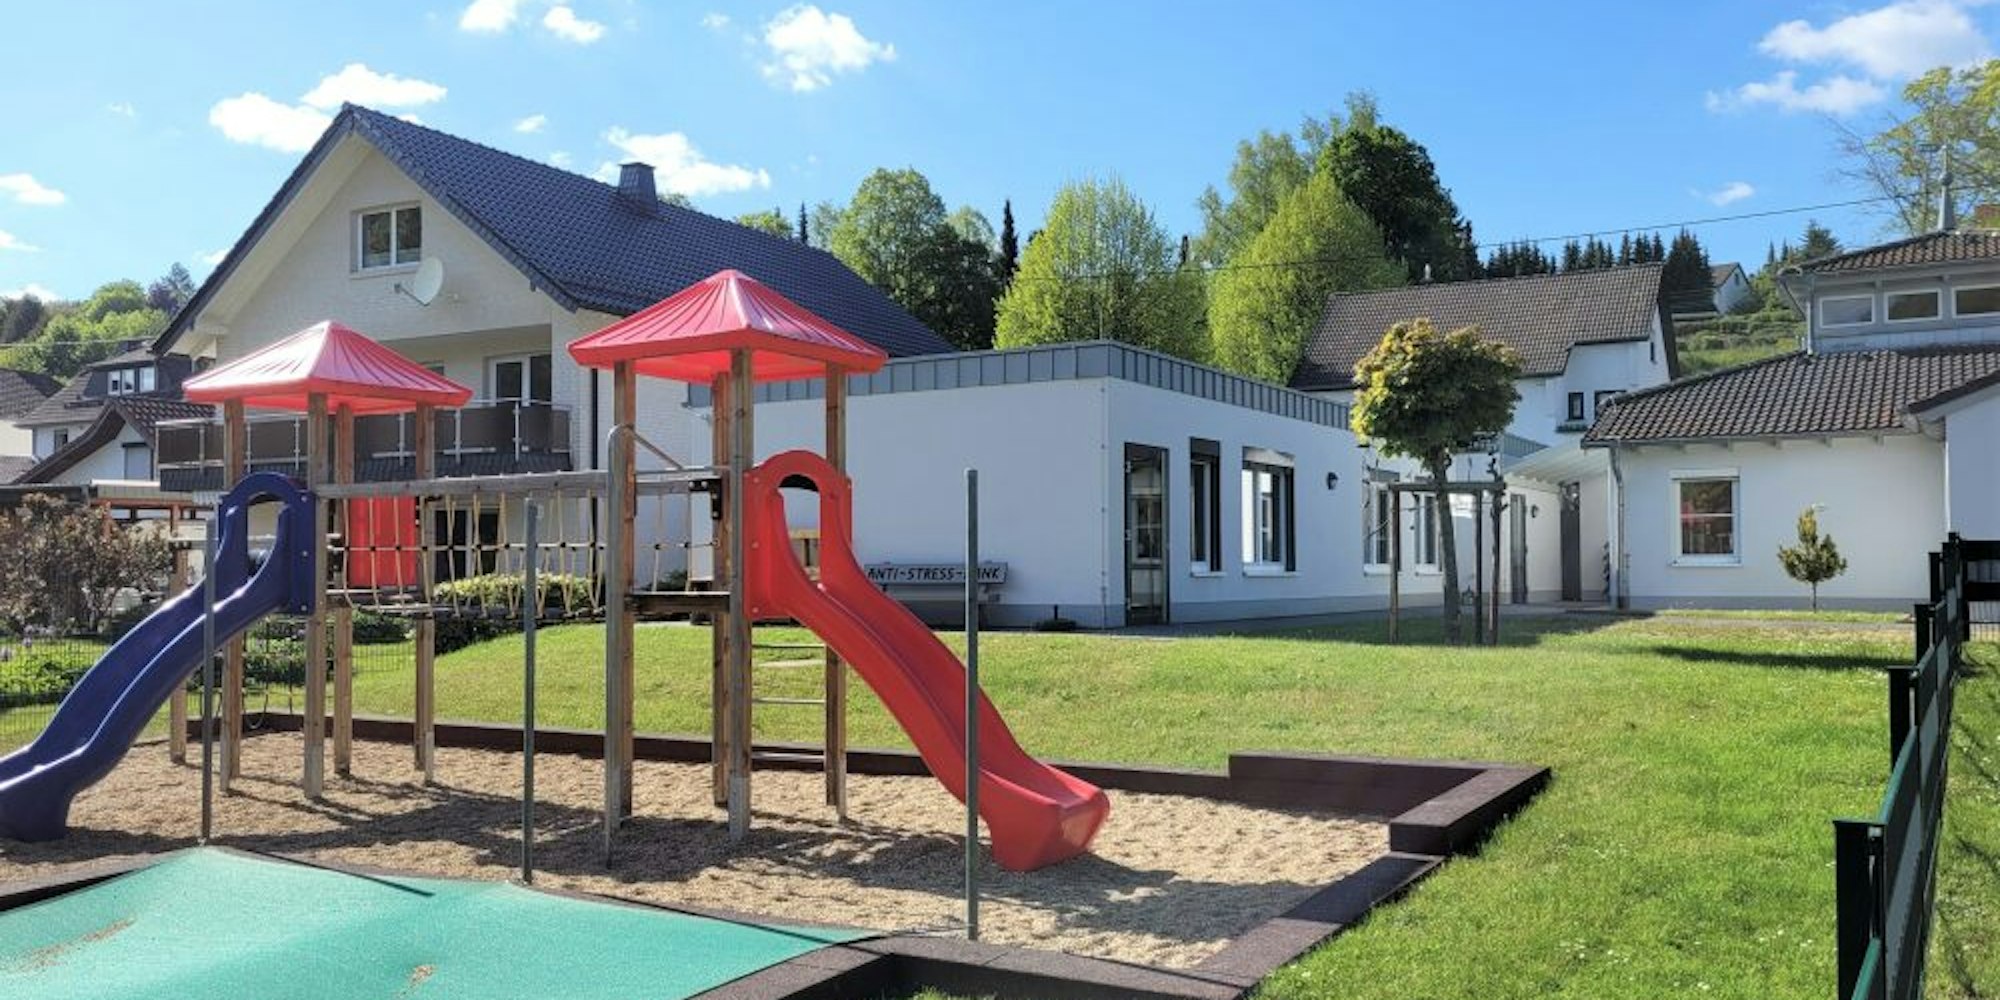 Wer übernimmt die Kosten für den Bau von Kindergärten nach der Ausweisung großer Wohngebiete? Die Grünen können sich vorstellen, dass sich an diesen sozialen Folgekosten auch die Investoren beteiligen.